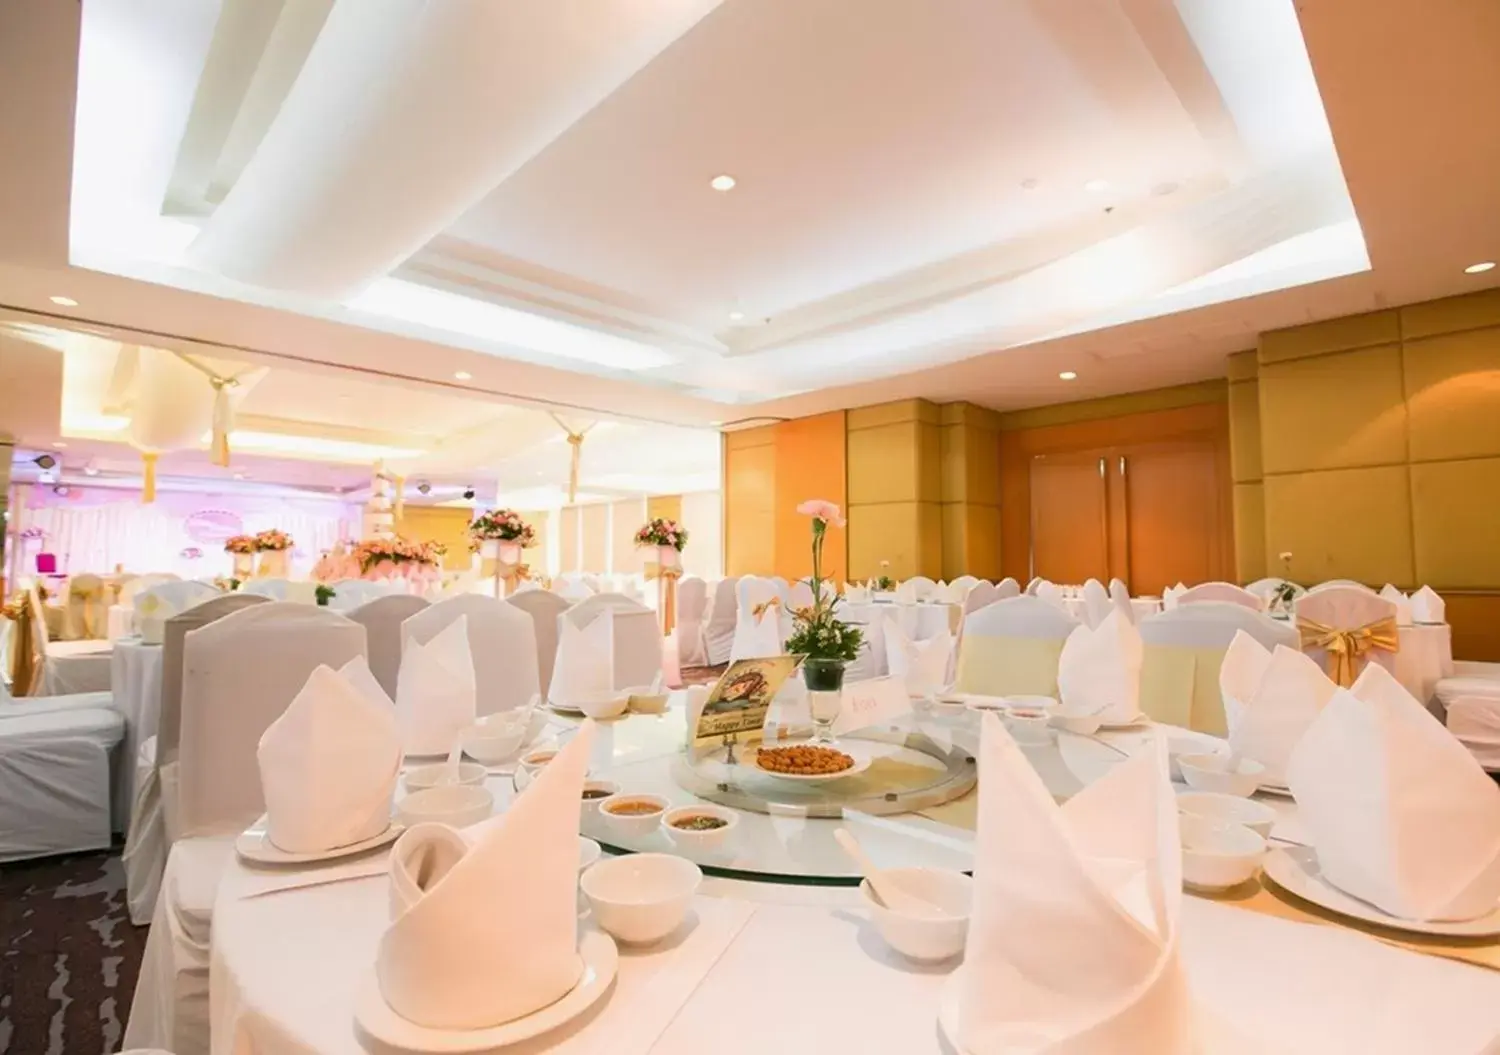 Banquet/Function facilities, Banquet Facilities in Jasmine City Hotel